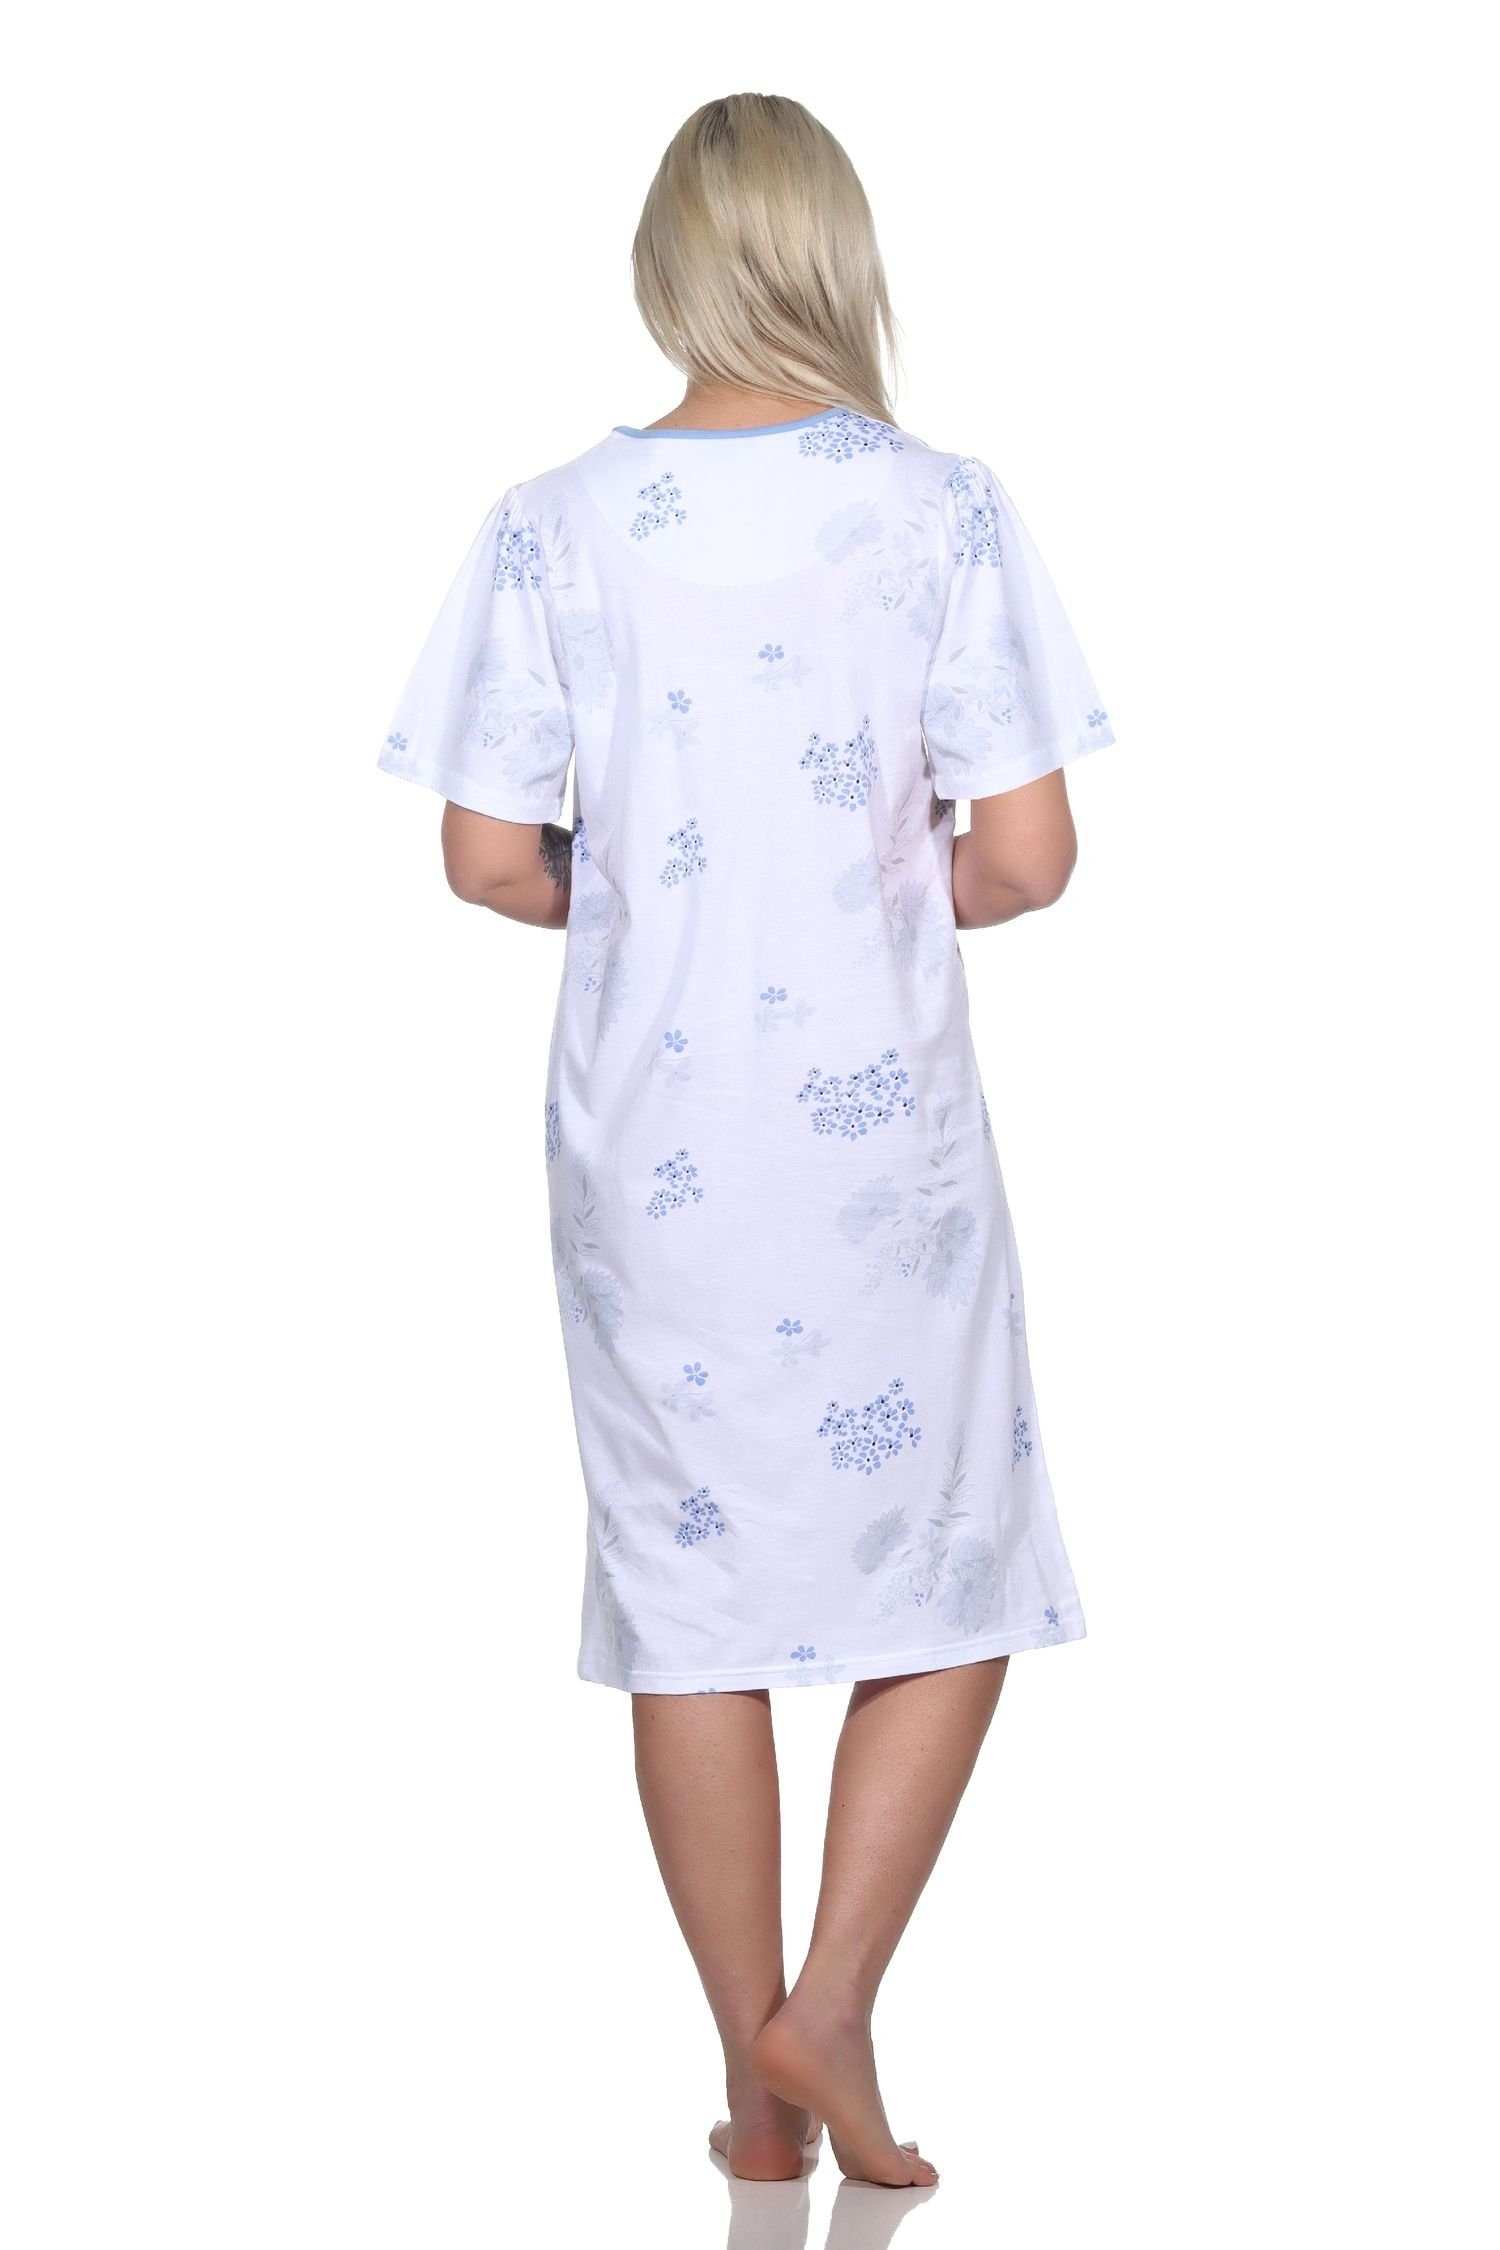 Normann Nachthemd Frauliches Damen klassischer hellblau kurzarm Optik in Nachthemd